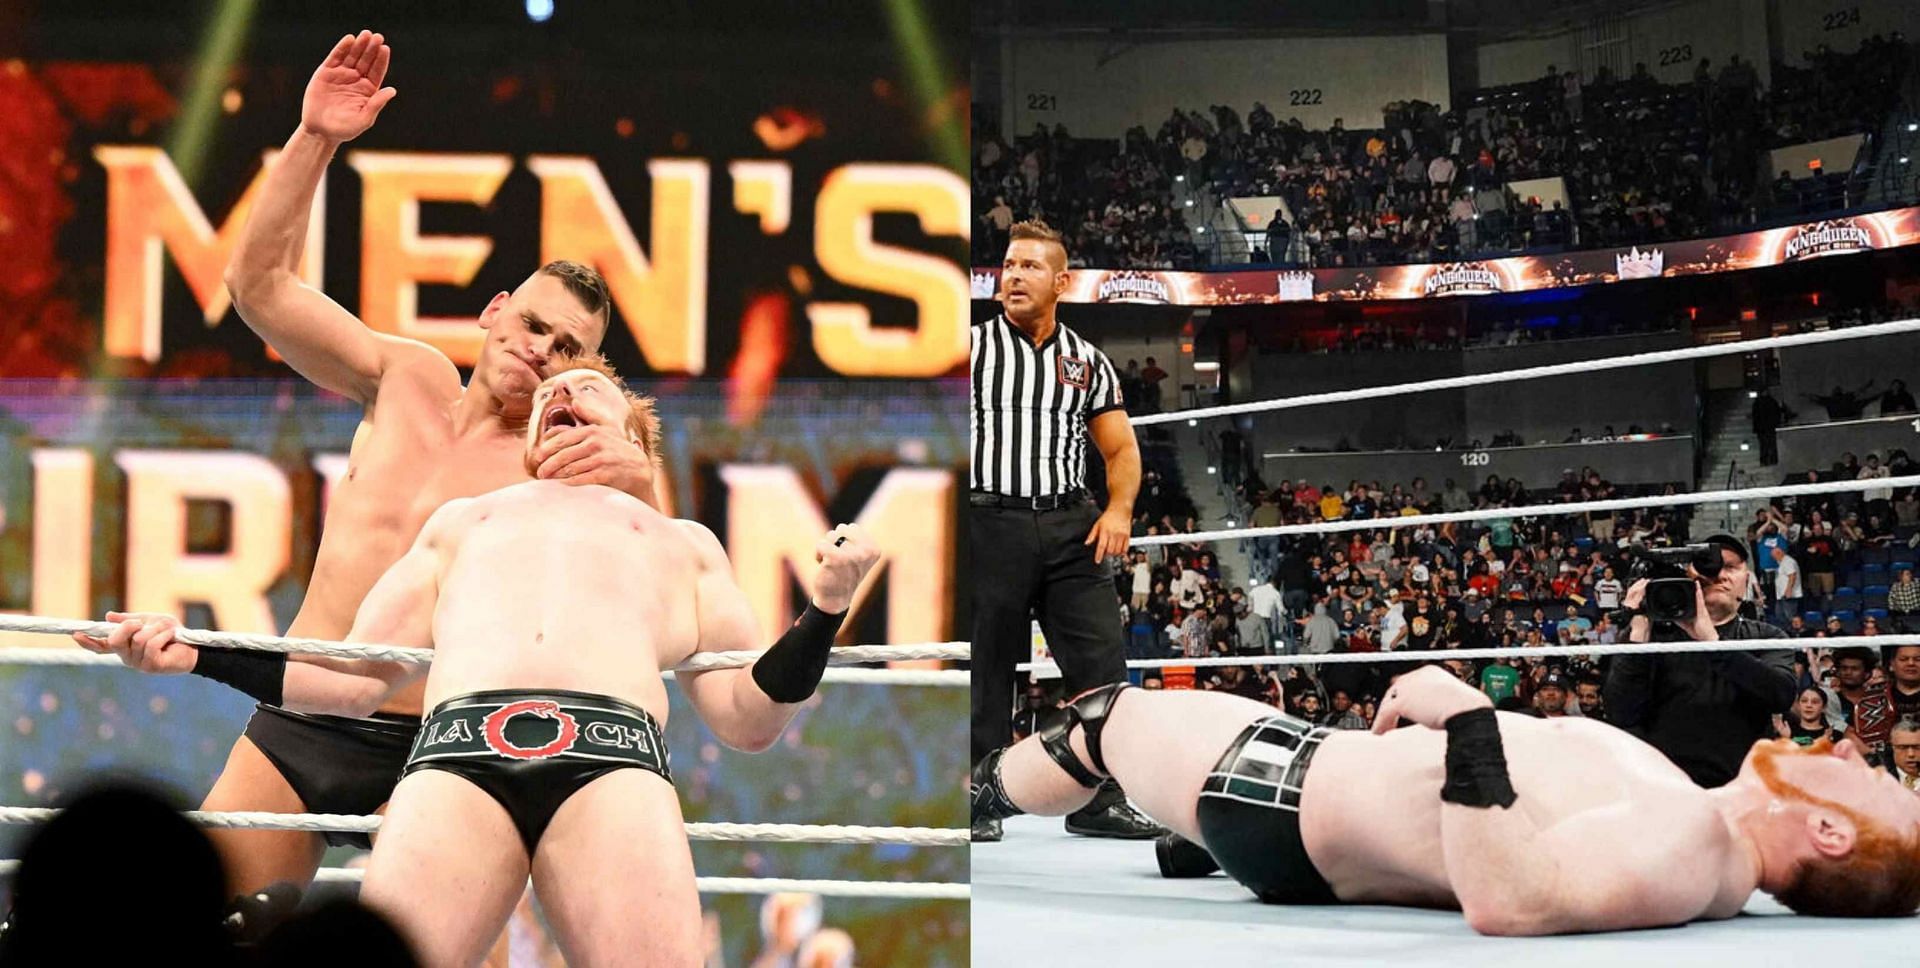 जानिए किस दिग्गज ने WWE Raw के बाद डाली खतरनाक फोटो?